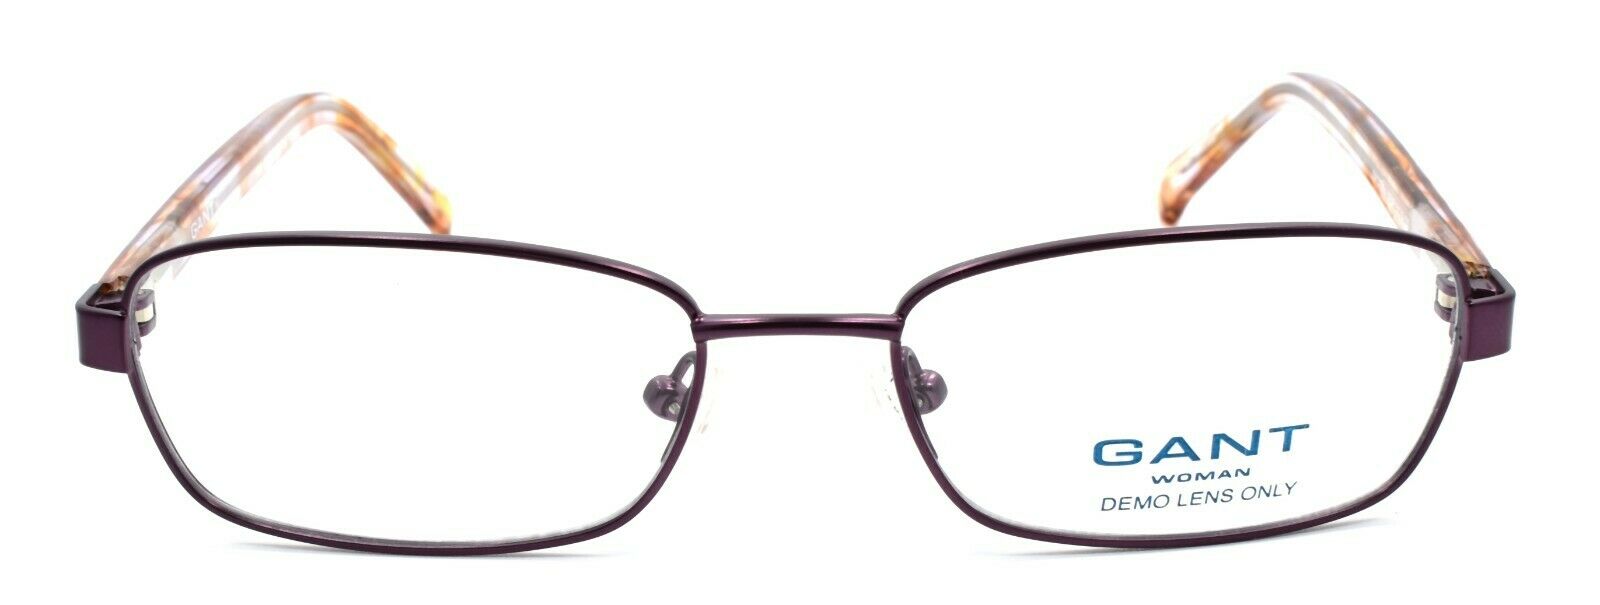 2-GANT GW Sierra SPUR Women's Eyeglasses Frames 51-16-135 Satin Purple-715583395343-IKSpecs